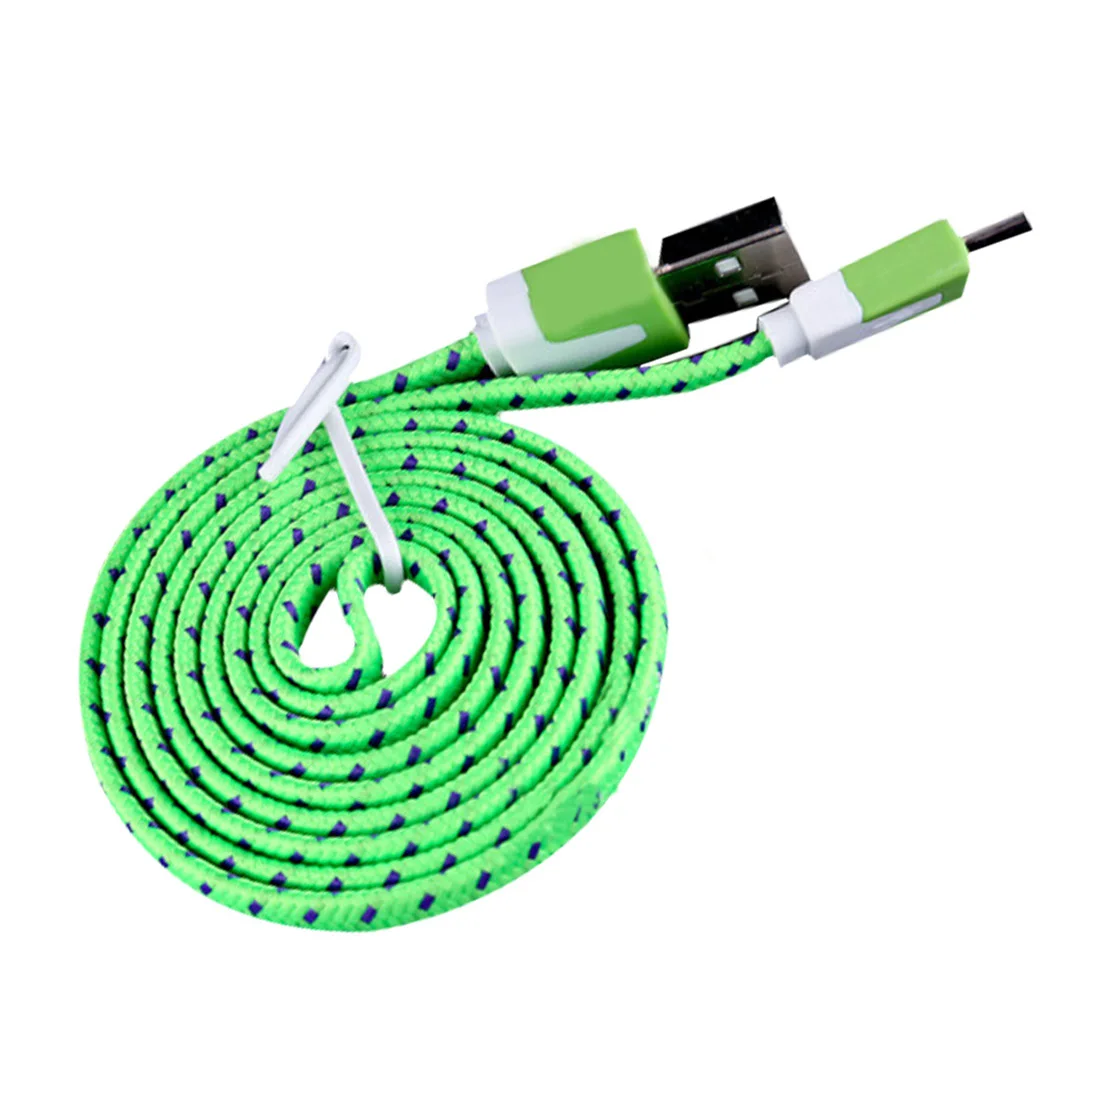 Centechia Micro USB кабель-трос для синхронизации данных для сотового телефона Lightgreen prolunga Usb кабель-удлинитель mini usb кабель 1 м/2 м/3 м - Цвет: Зеленый